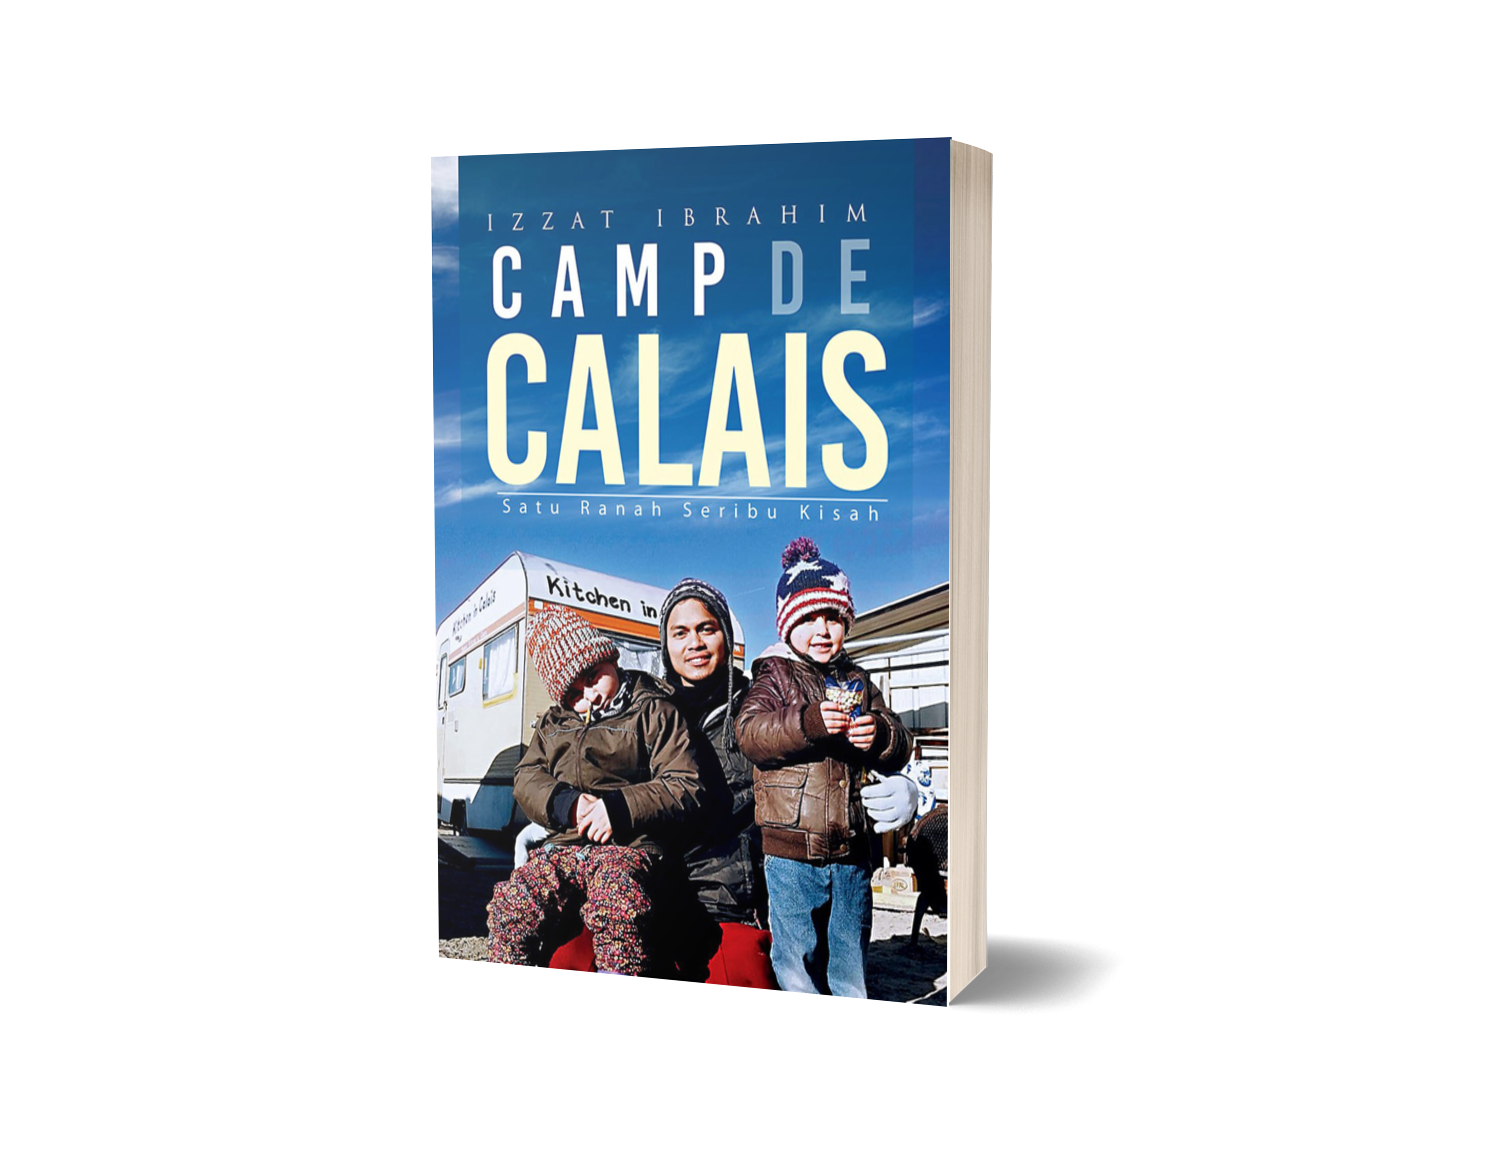 CAMP DE CALAIS